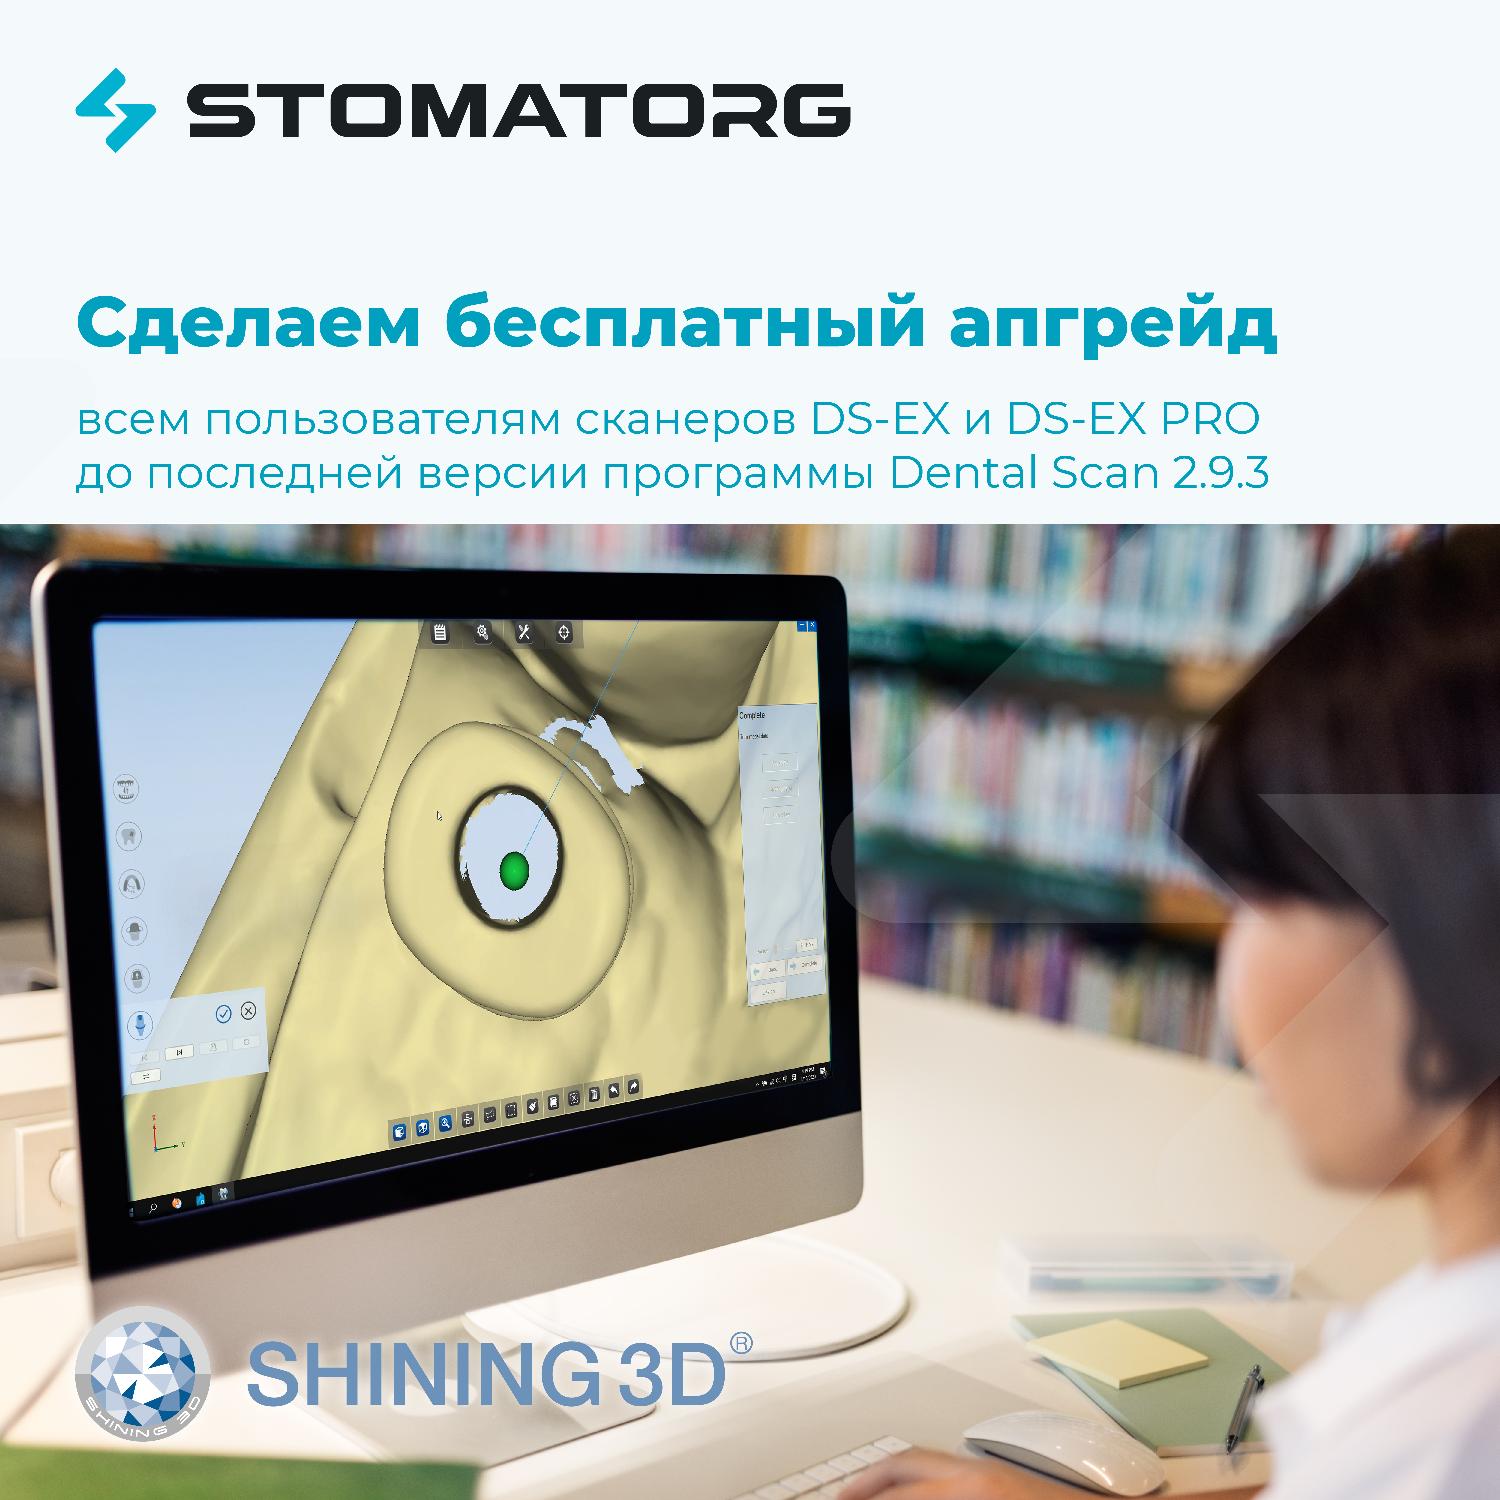 Бесплатно обновим программное обеспечение для сканеров DS-EX и DS-EX PRO (Shining3D).